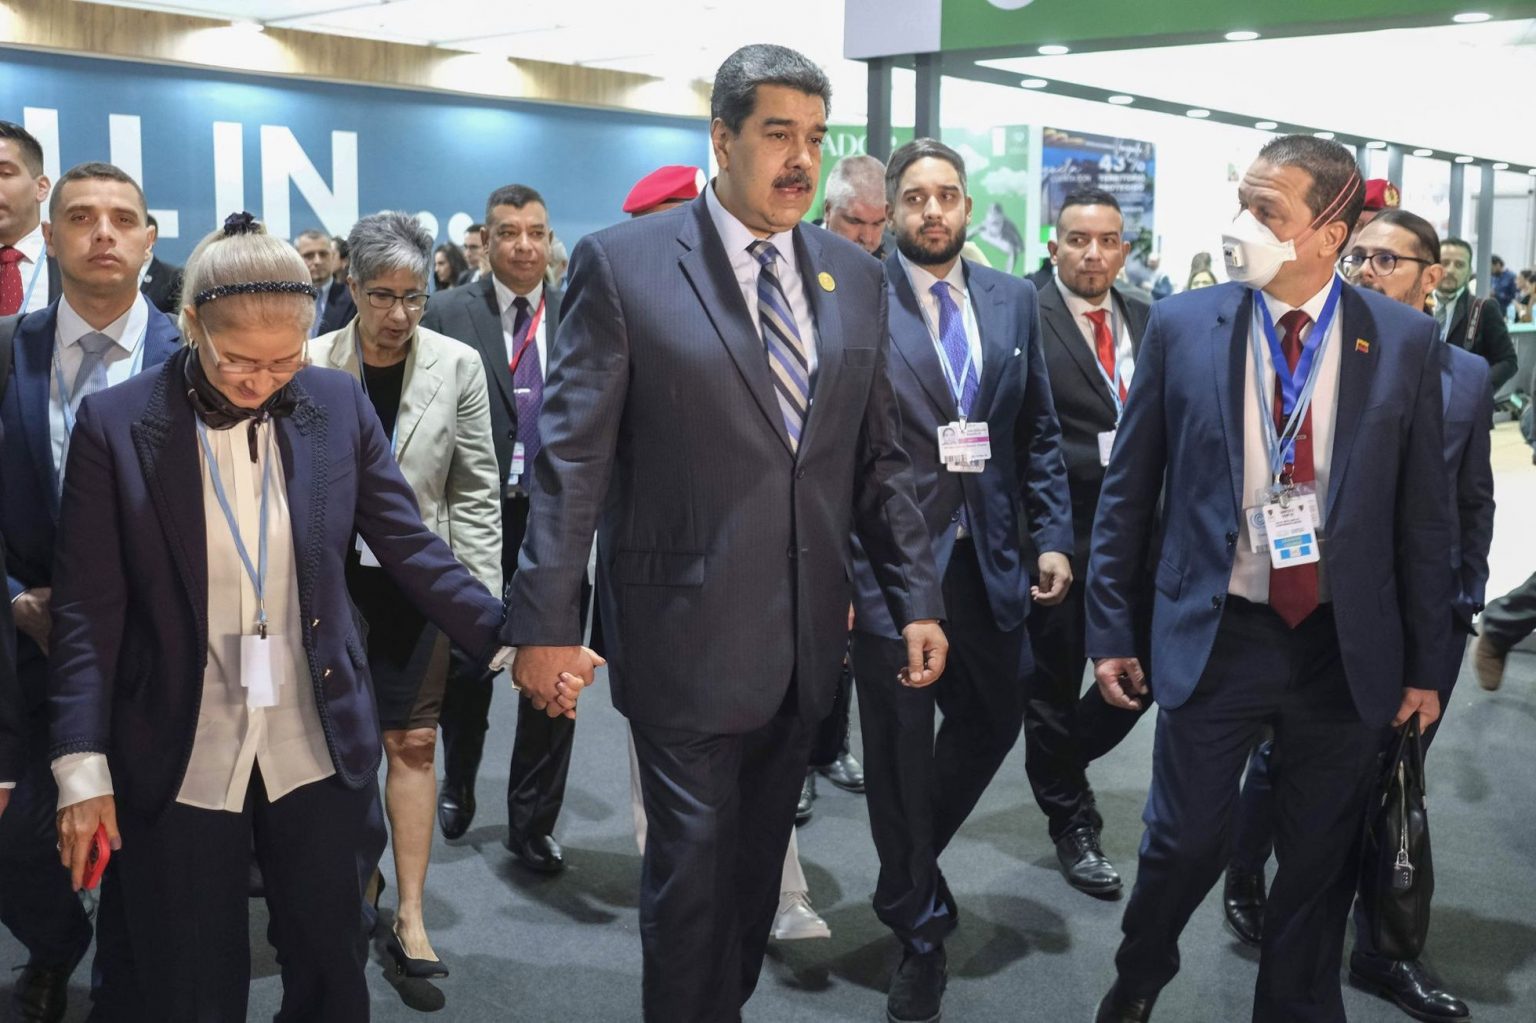 Maduro estrena su nueva posicion internacional en la cumbre del clima al verse con Macron Kerry y Petro